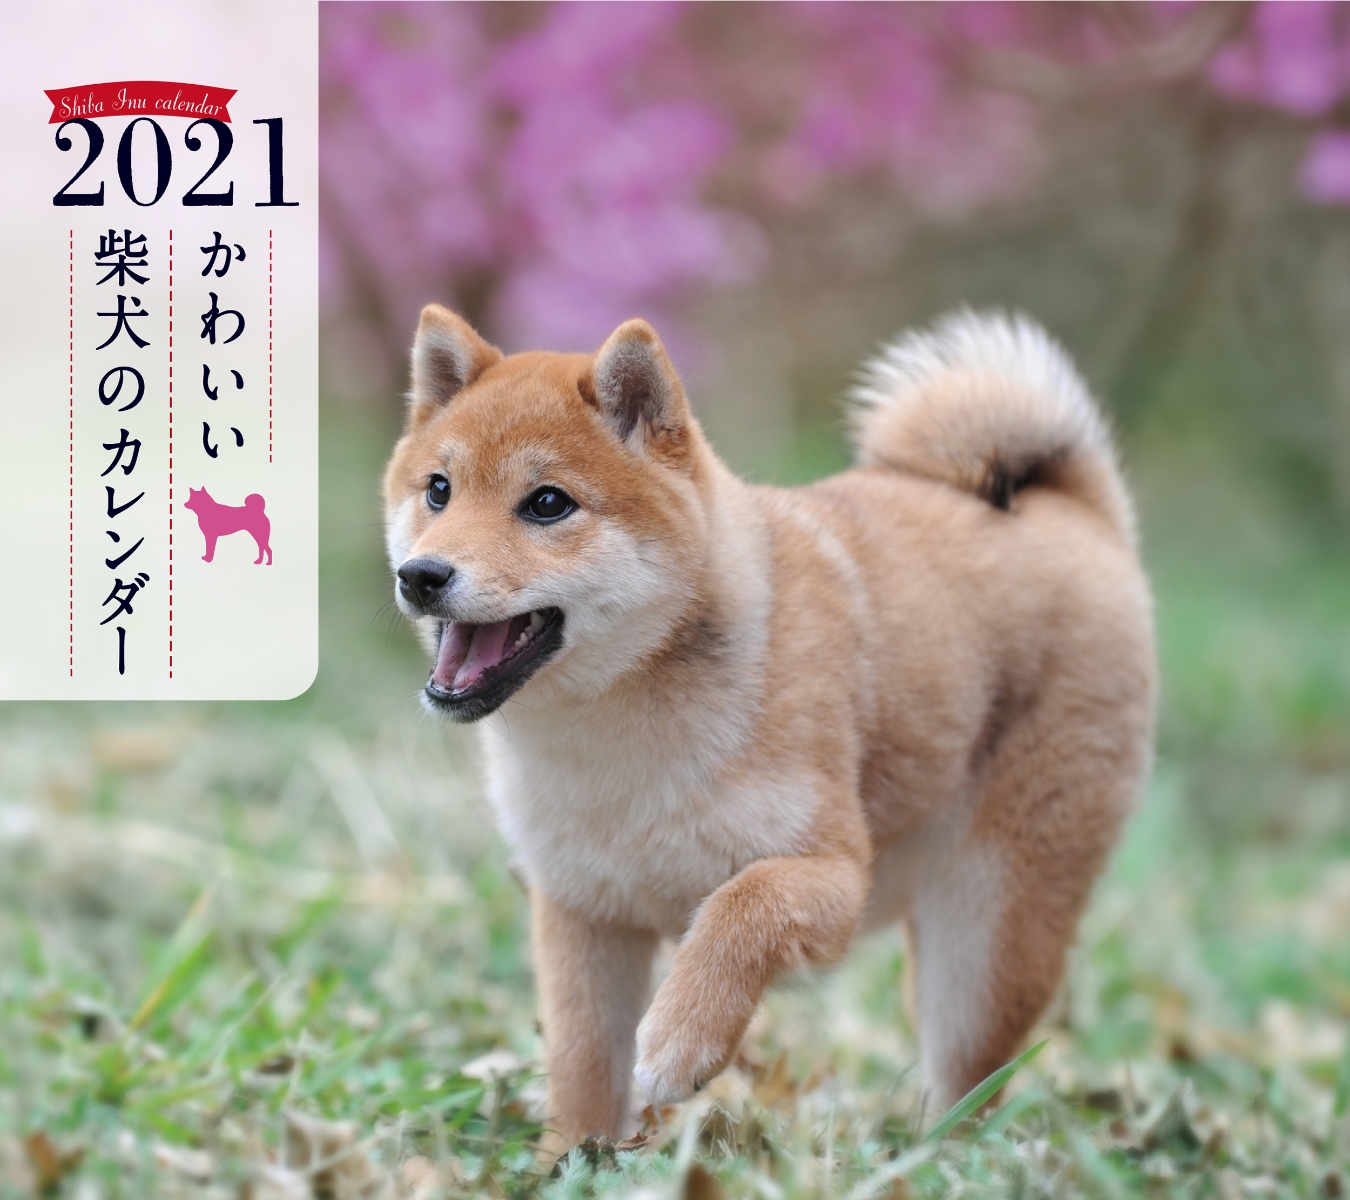 楽天ブックス 2021年 ミニ判カレンダー かわいい柴犬のカレンダー 井川 俊彦 9784416920497 本